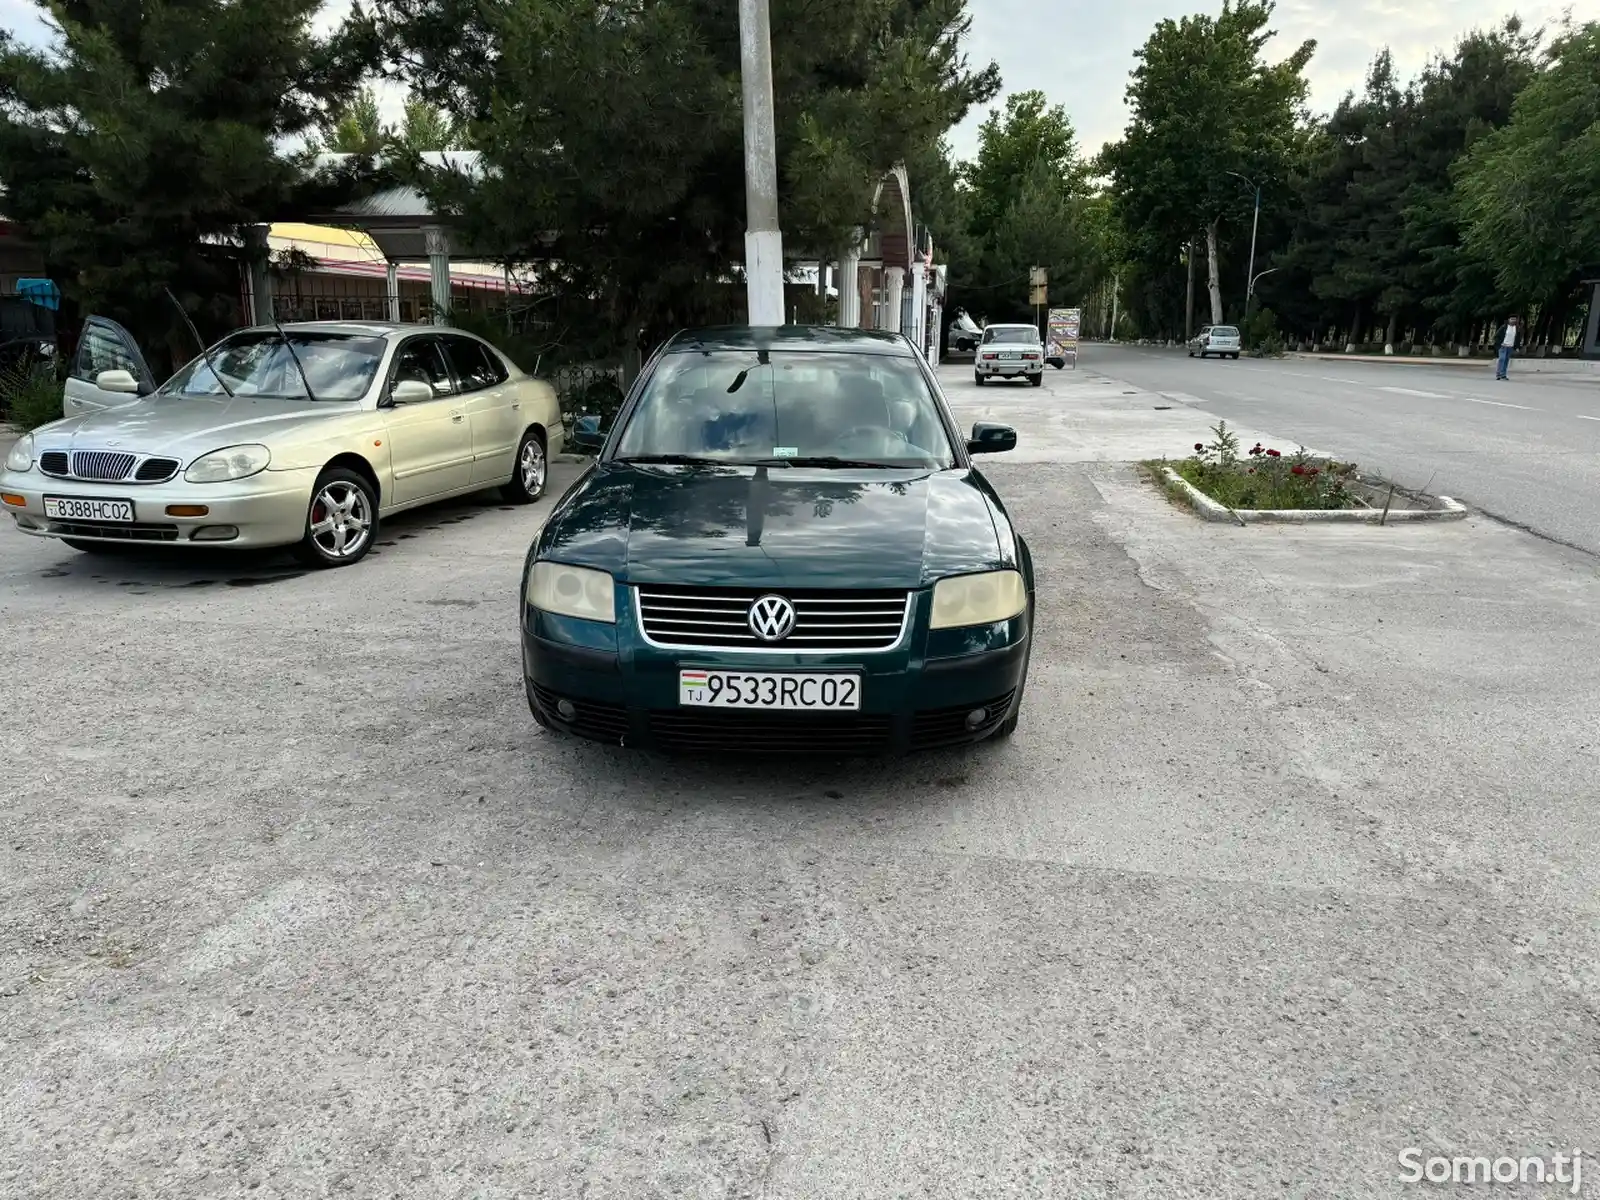 Volkswagen Passat, 2001-2